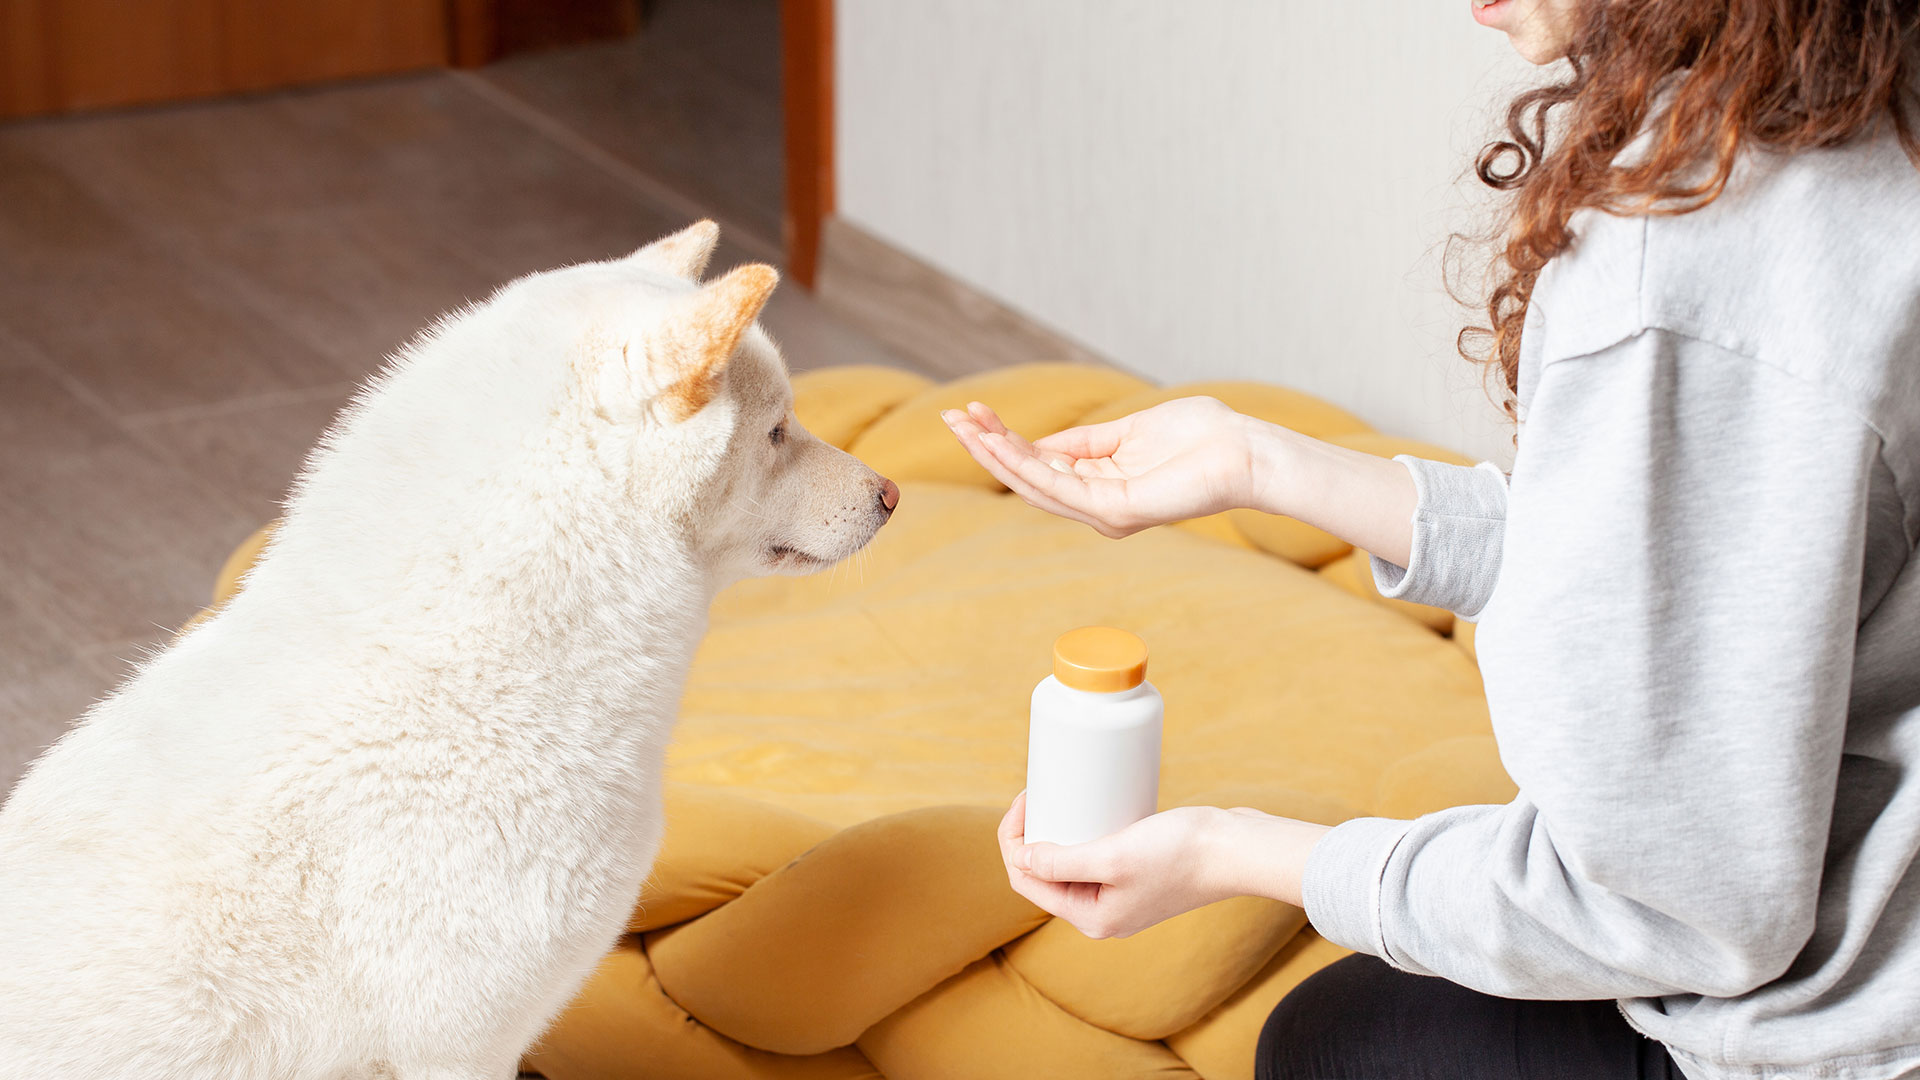 El poderoso olfato de los perros y de los gatos dificulta "enconderles" los medicamentos en la comida (Getty)